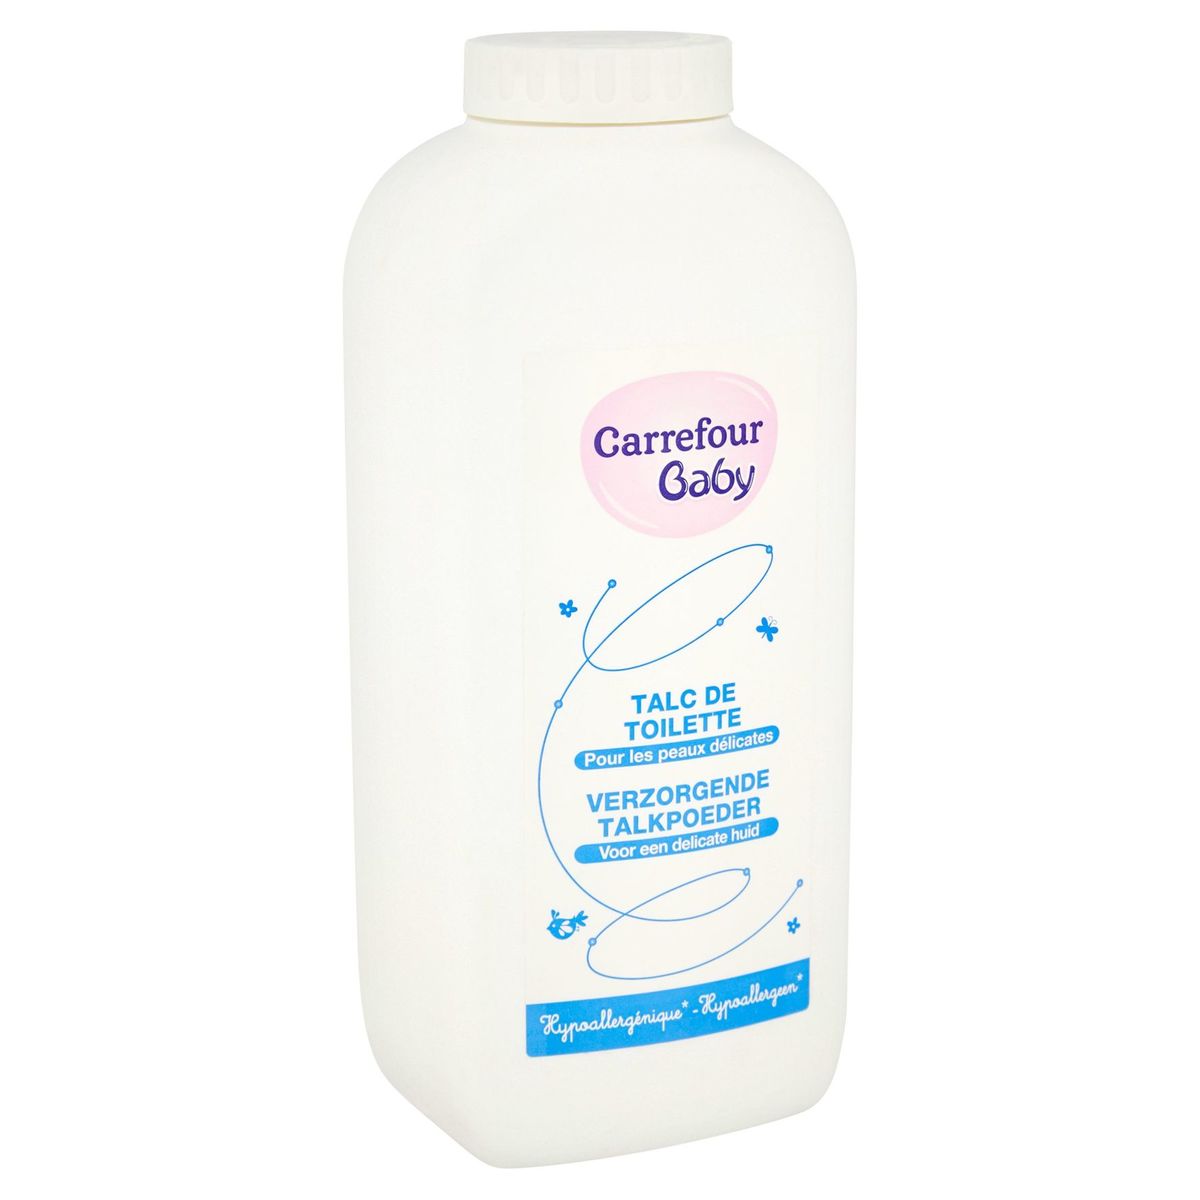 Carrefour Baby Verzorgende Talkpoeder Voor een delicate huid 250 g